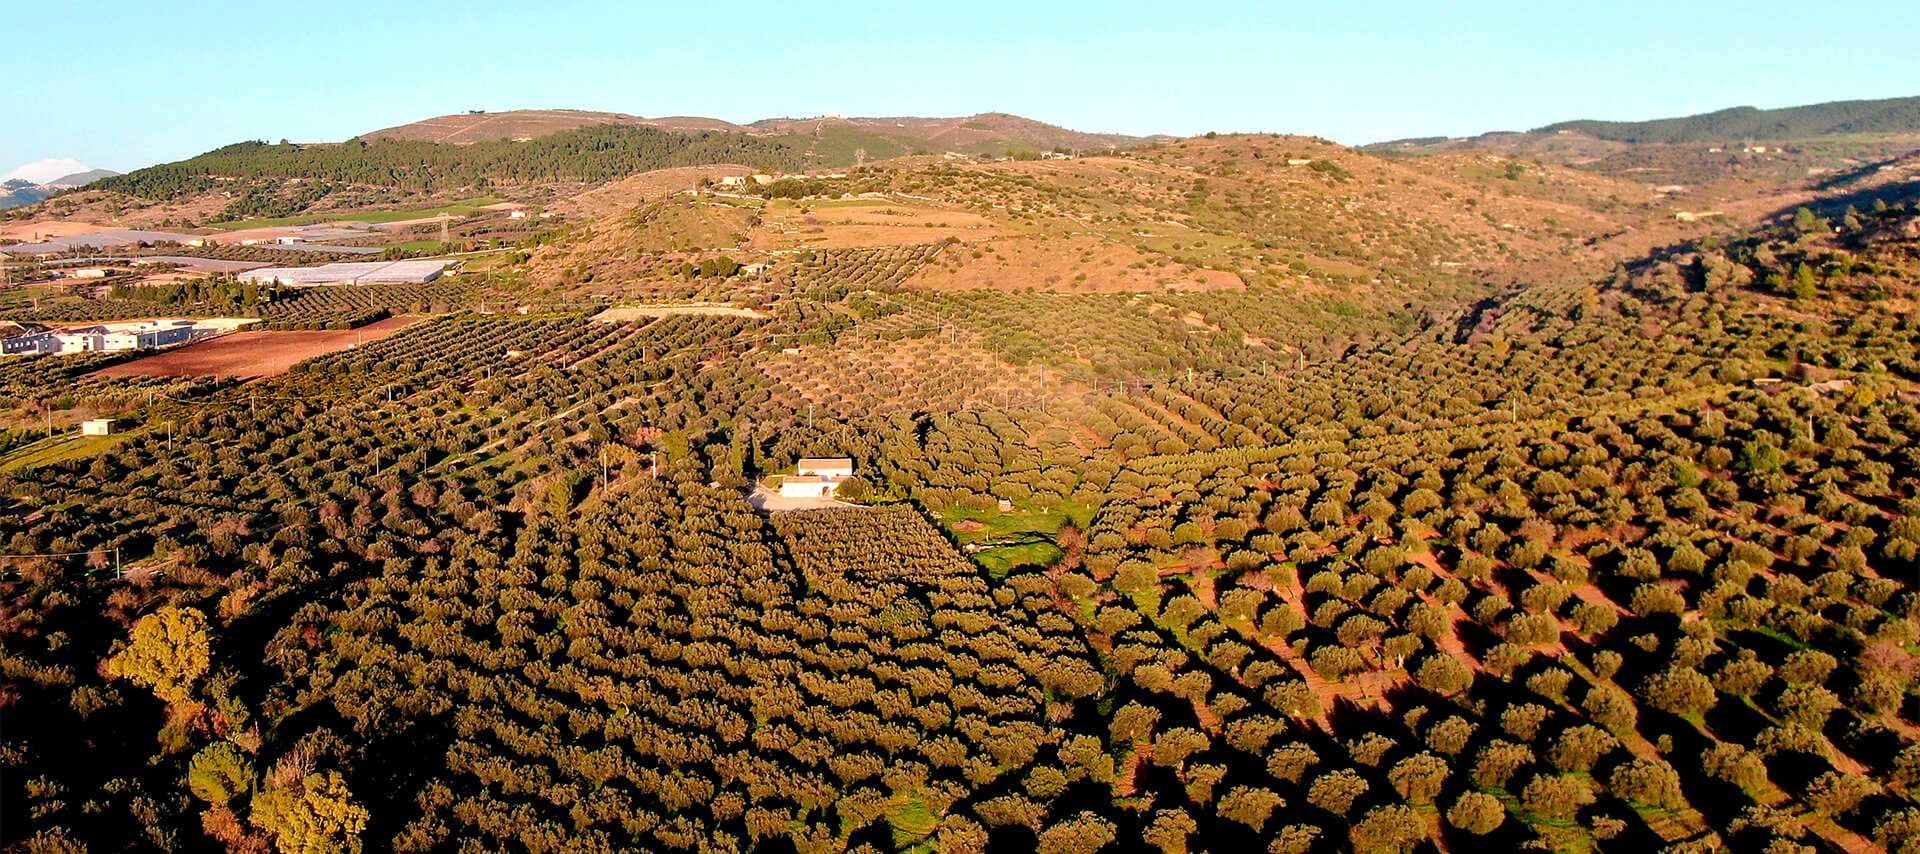 europa-die-besten-olivenölwettbewerbe-produzenten-auf-sizilien-und-sardinien-beherrschen-in-der-welt-wettbewerb-olivenolzeiten